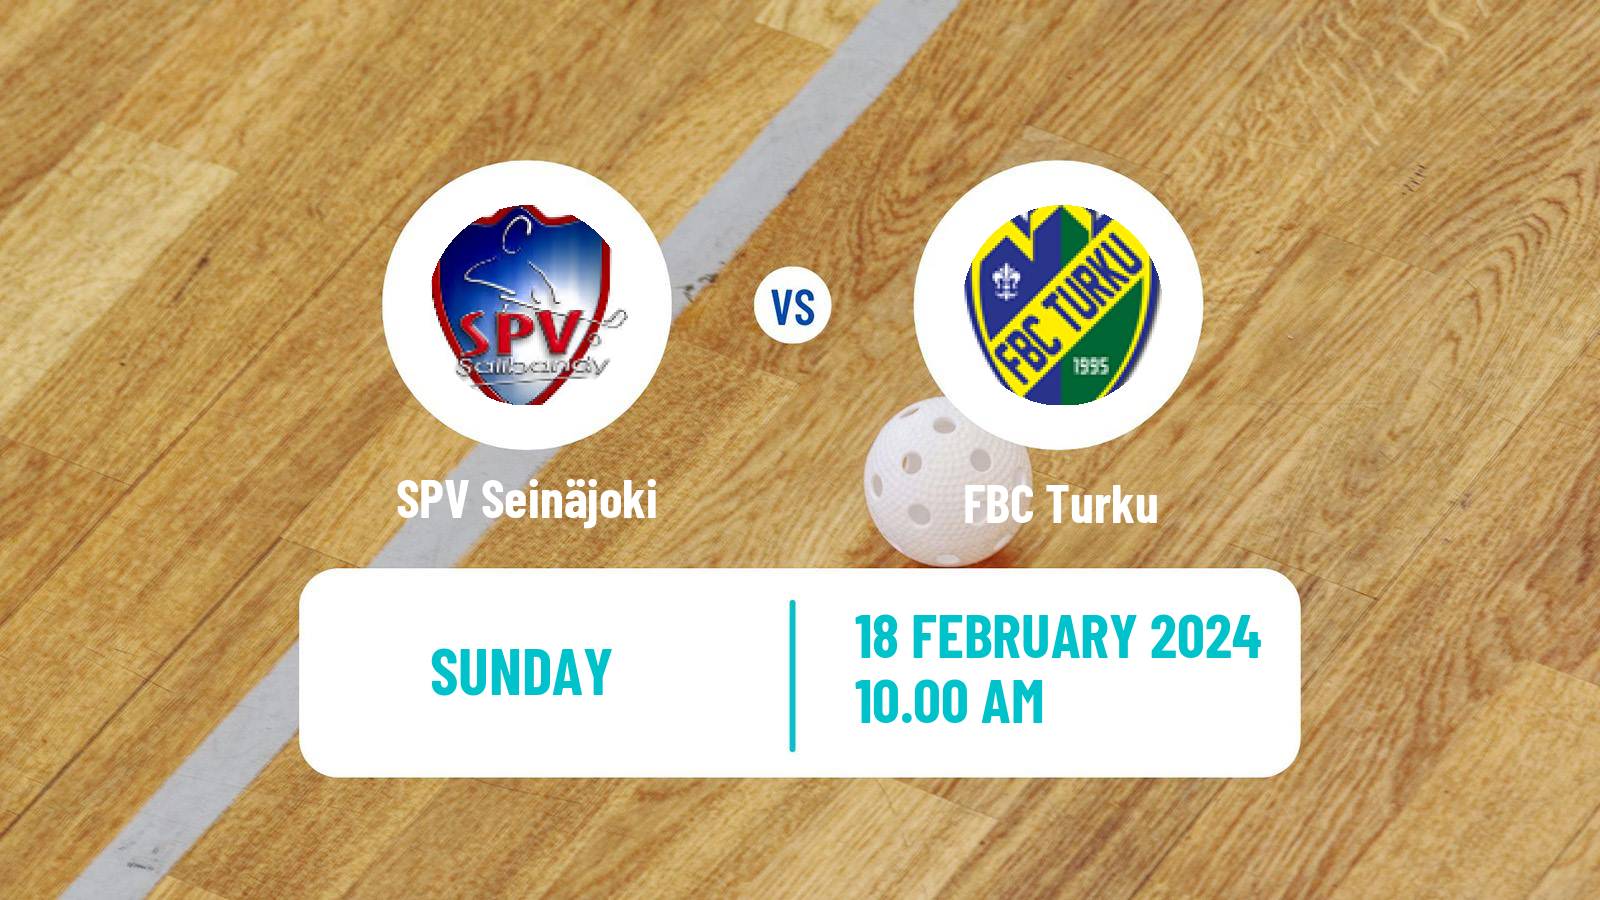 Floorball Finnish F-Liiga SPV Seinäjoki - Turku